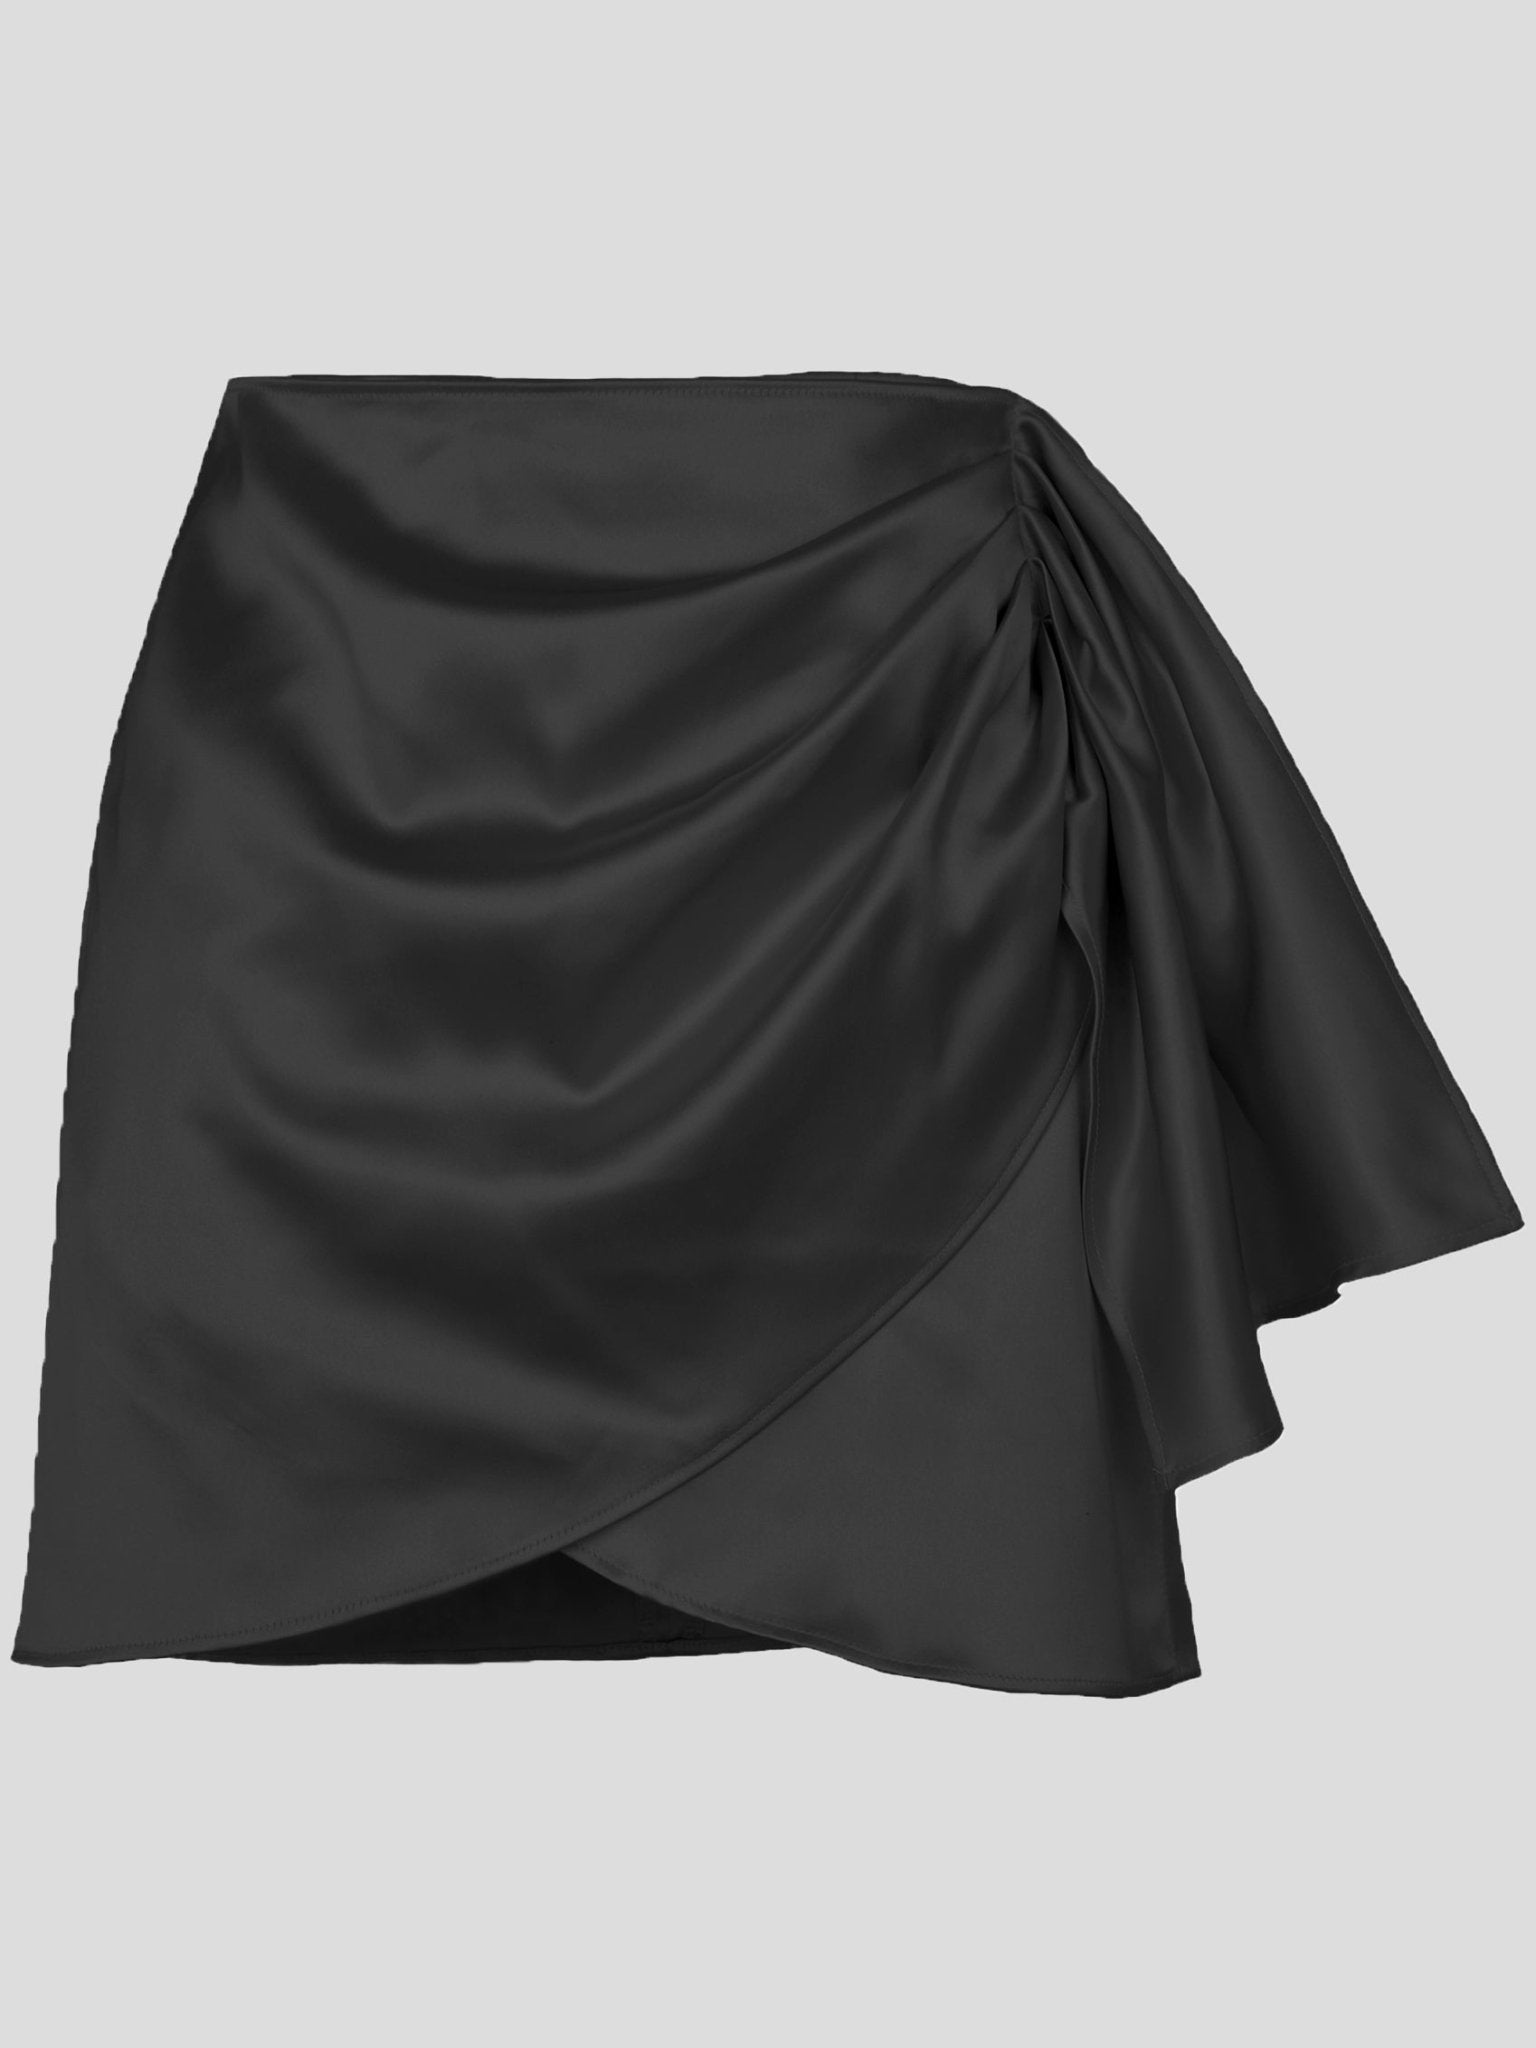 Women's Skirts Solid Satin High Waist Irregular Skirt